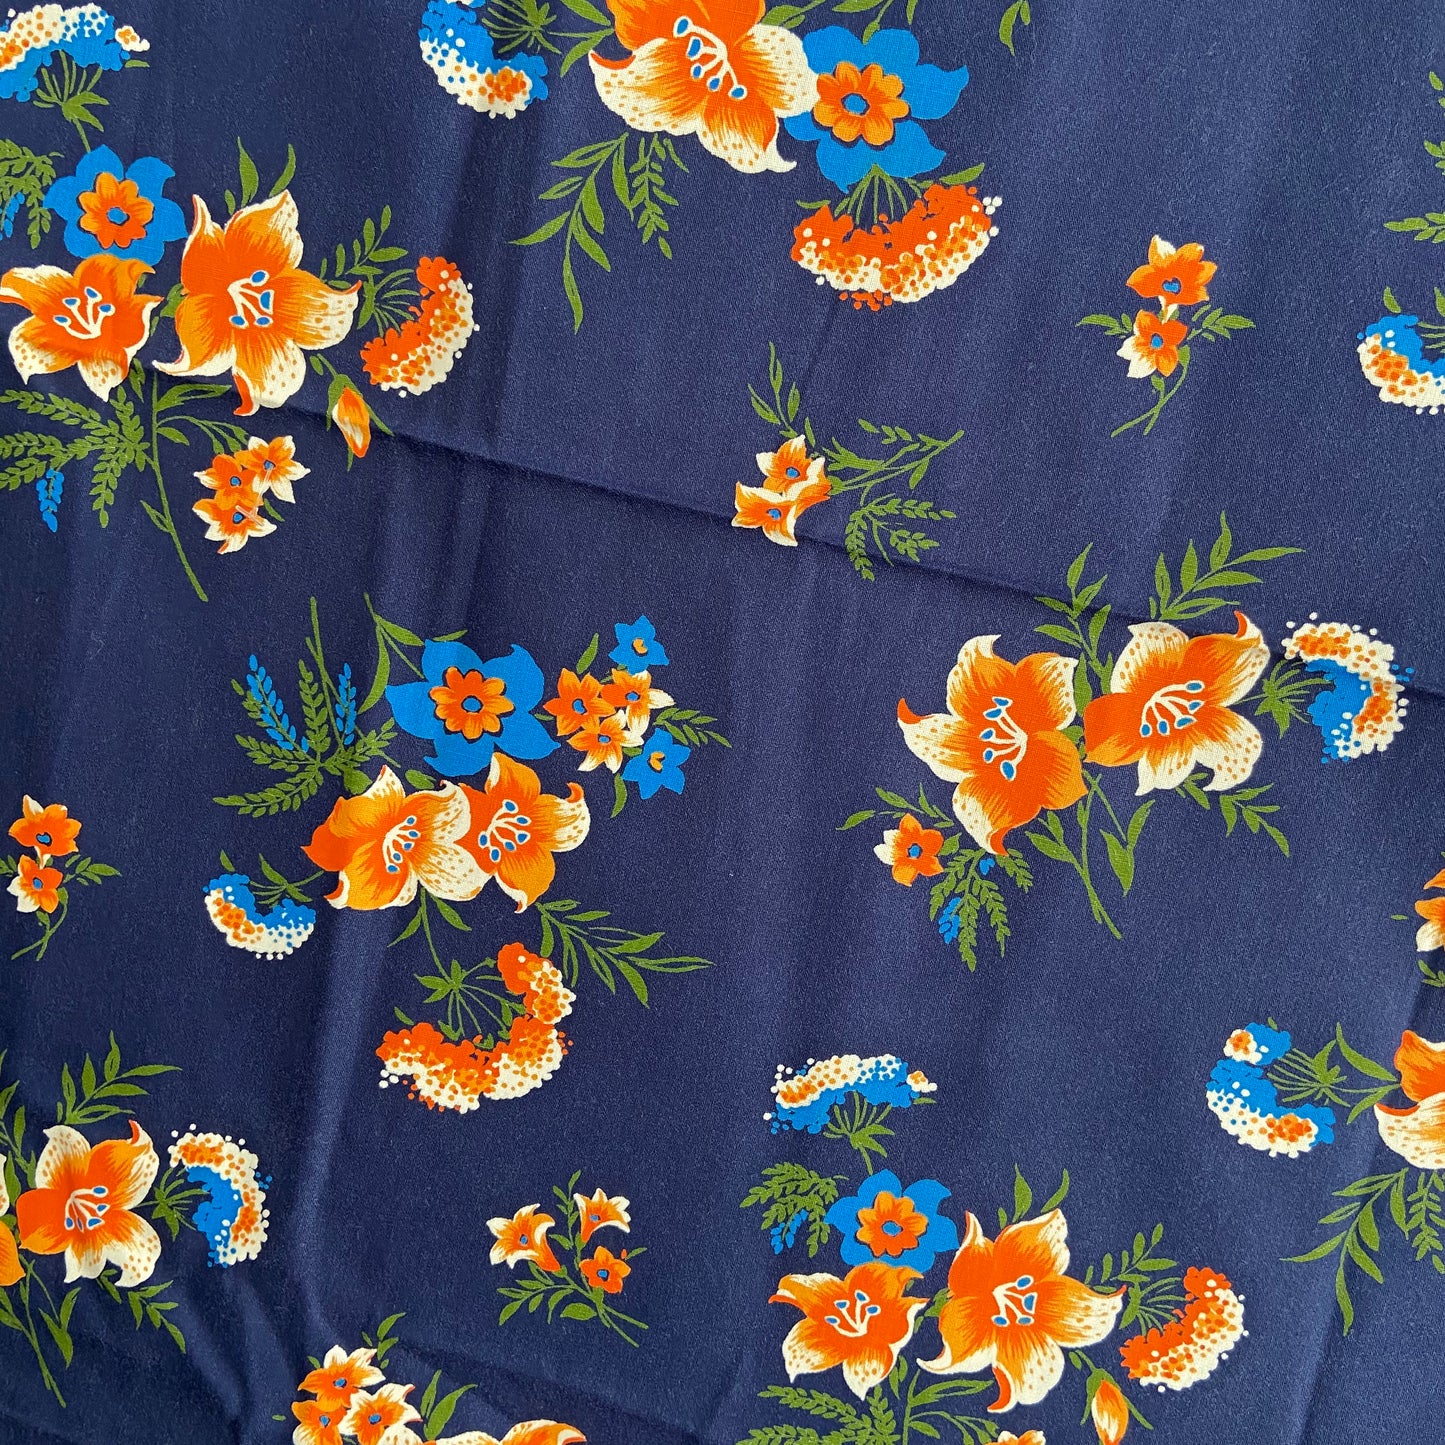 ALLAN Robison Vintage Blue Floral Cotton Fabric BRIGHT & Clean 200cms